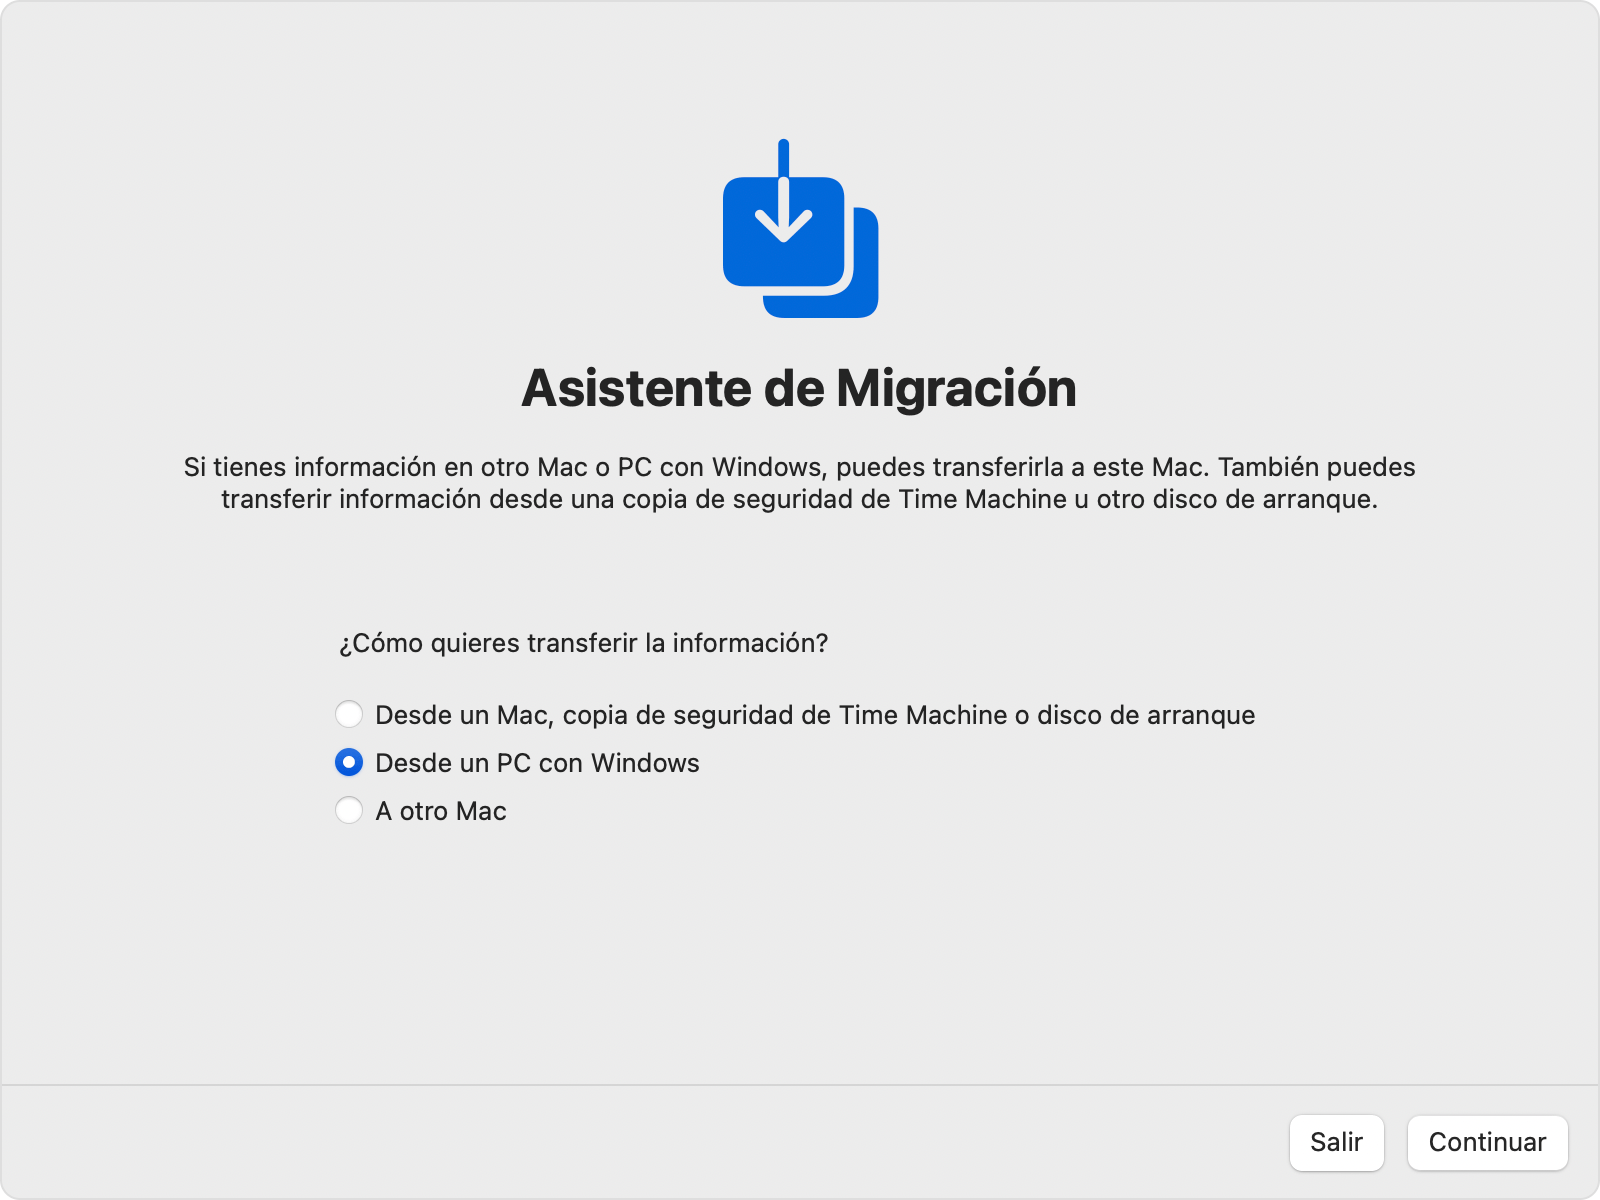 Asistente de Migración en Mac: Transferir “Desde un PC con Windows”